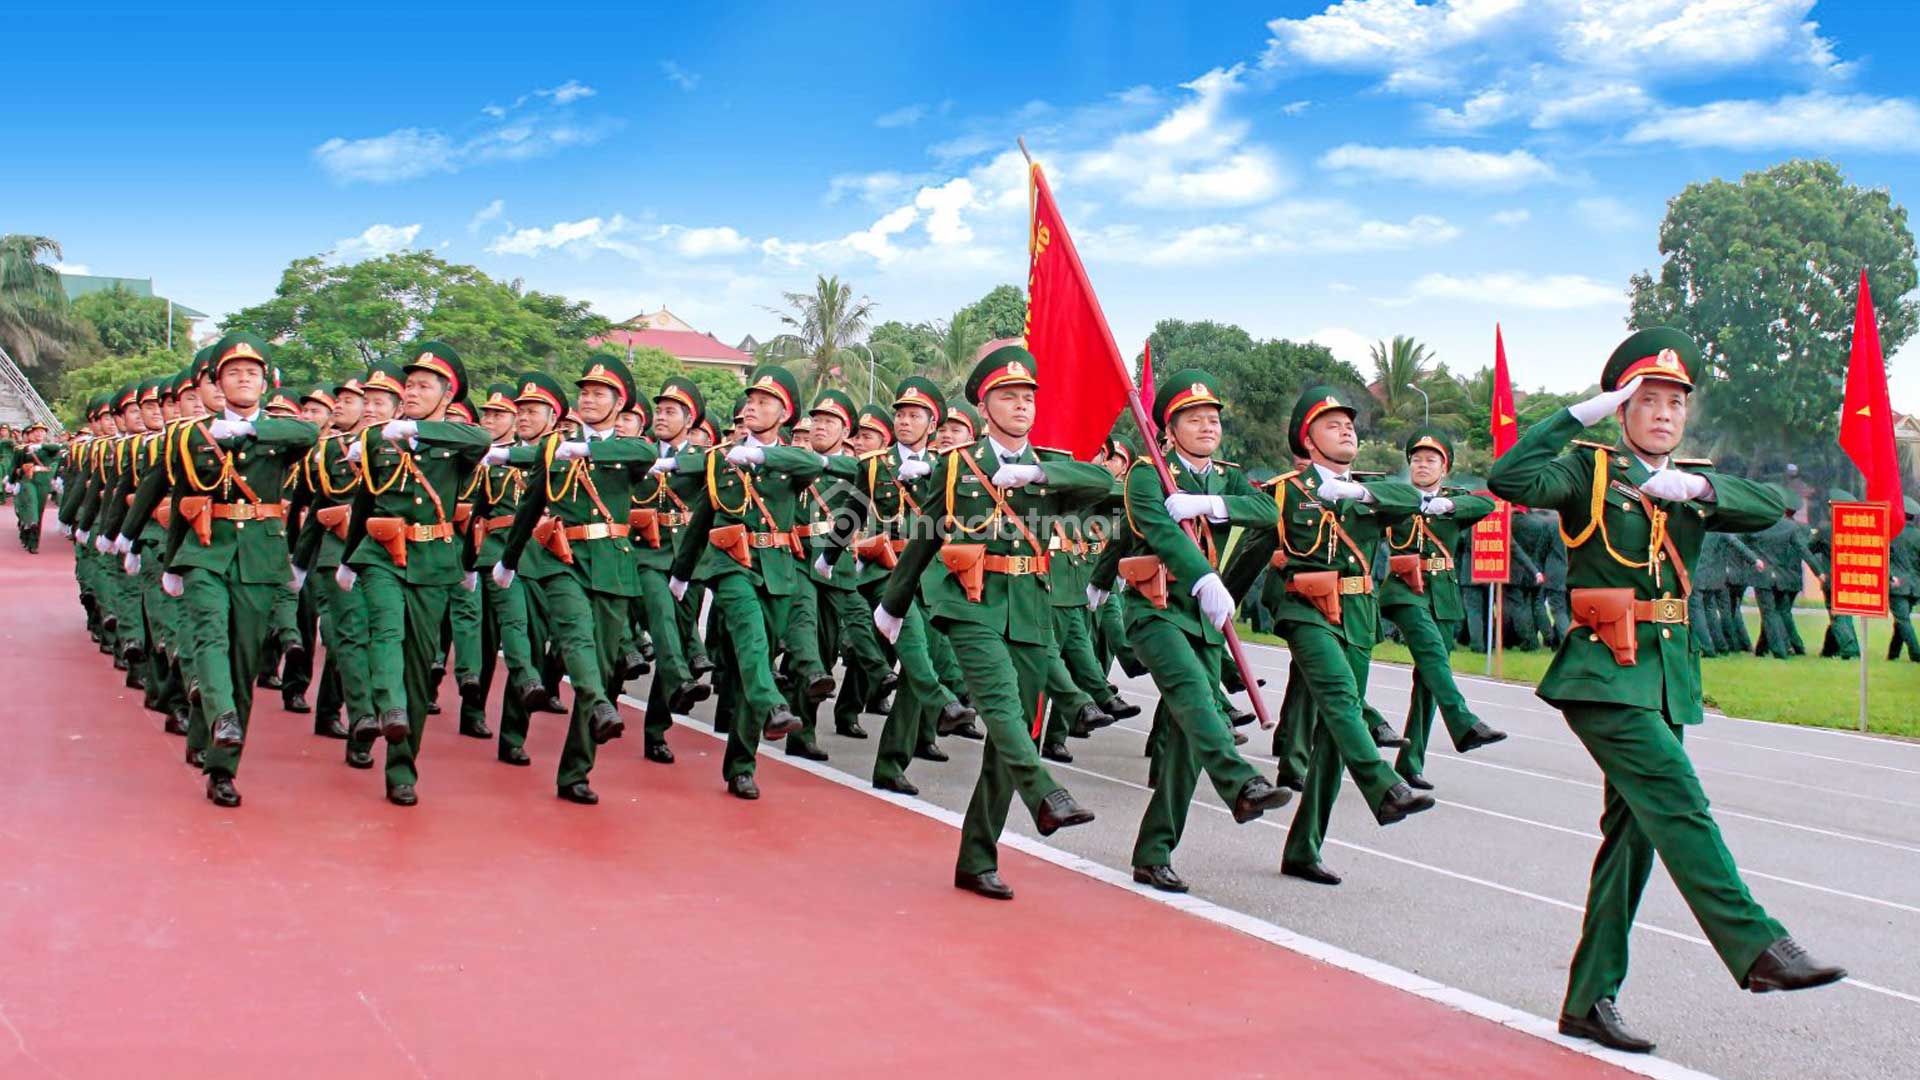 Quân Đội Nhân Dân Việt Nam: Hình ảnh Quân Đội Nhân Dân Việt Nam luôn mang đến sự tự hào và vinh quang cho đất nước. Với sự nghiêm túc và quyết tâm, những người lính của chúng ta đã đóng góp không ít vào sự phát triển và bảo vệ của Tổ quốc. Nếu bạn muốn khám phá hình ảnh các anh hùng bên cờ đỏ sao vàng, hãy bấm xem ngay bức hình này.